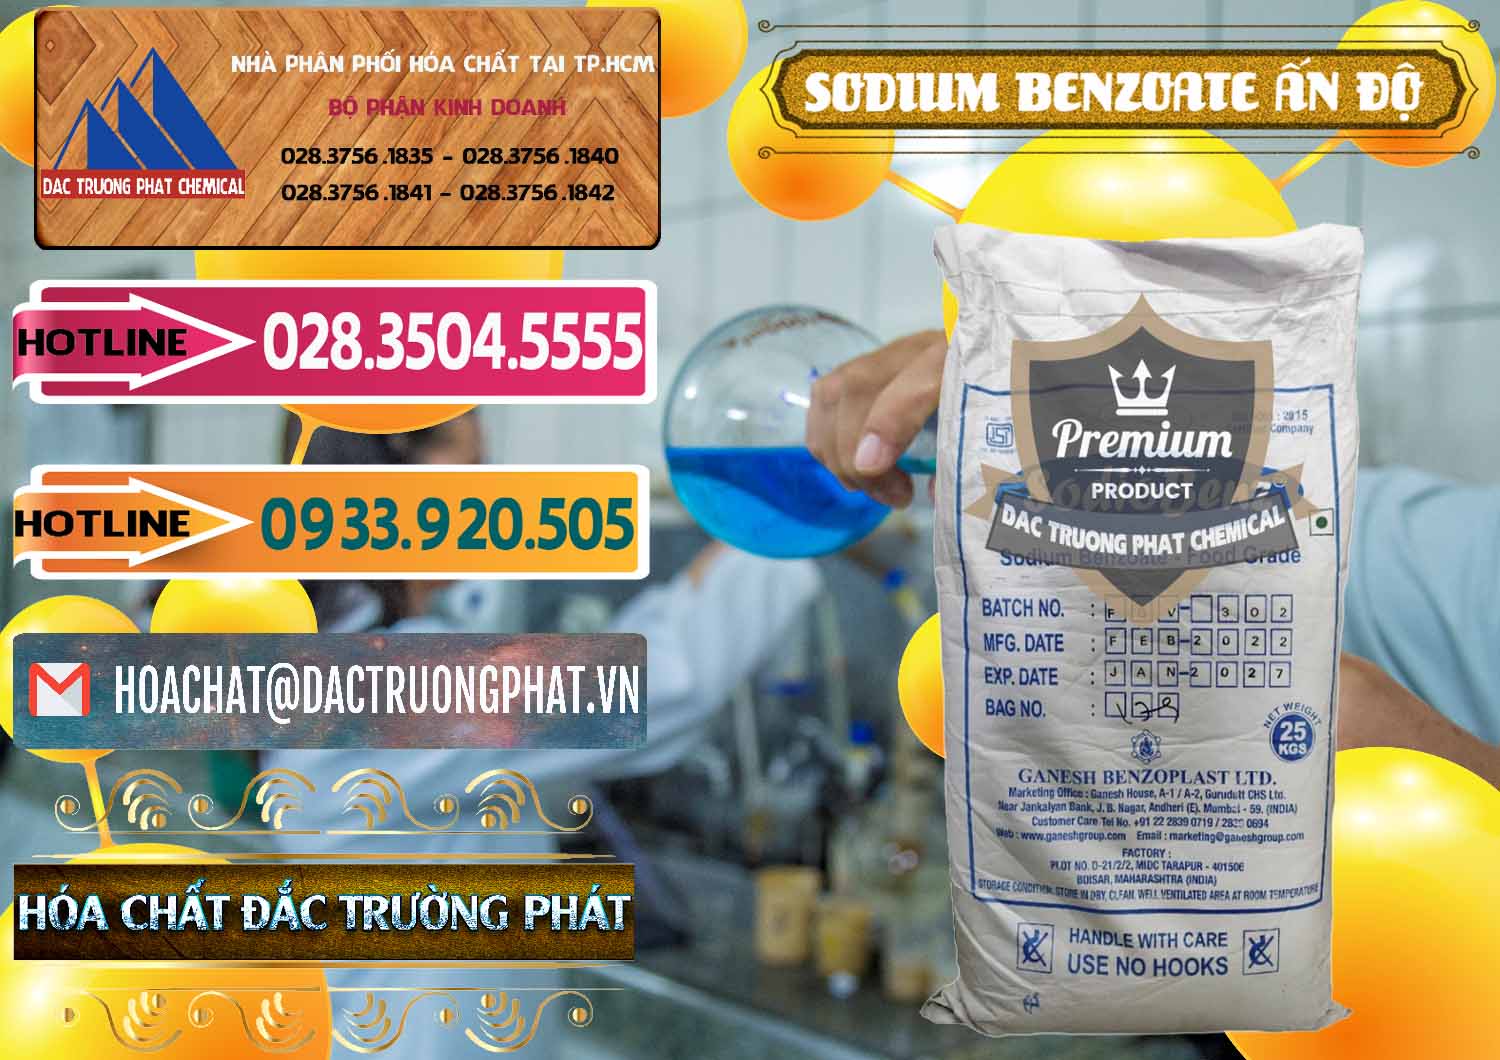 Công ty chuyên kinh doanh - bán Sodium Benzoate - Mốc Bột Ấn Độ India - 0361 - Cty nhập khẩu ( cung cấp ) hóa chất tại TP.HCM - dactruongphat.vn